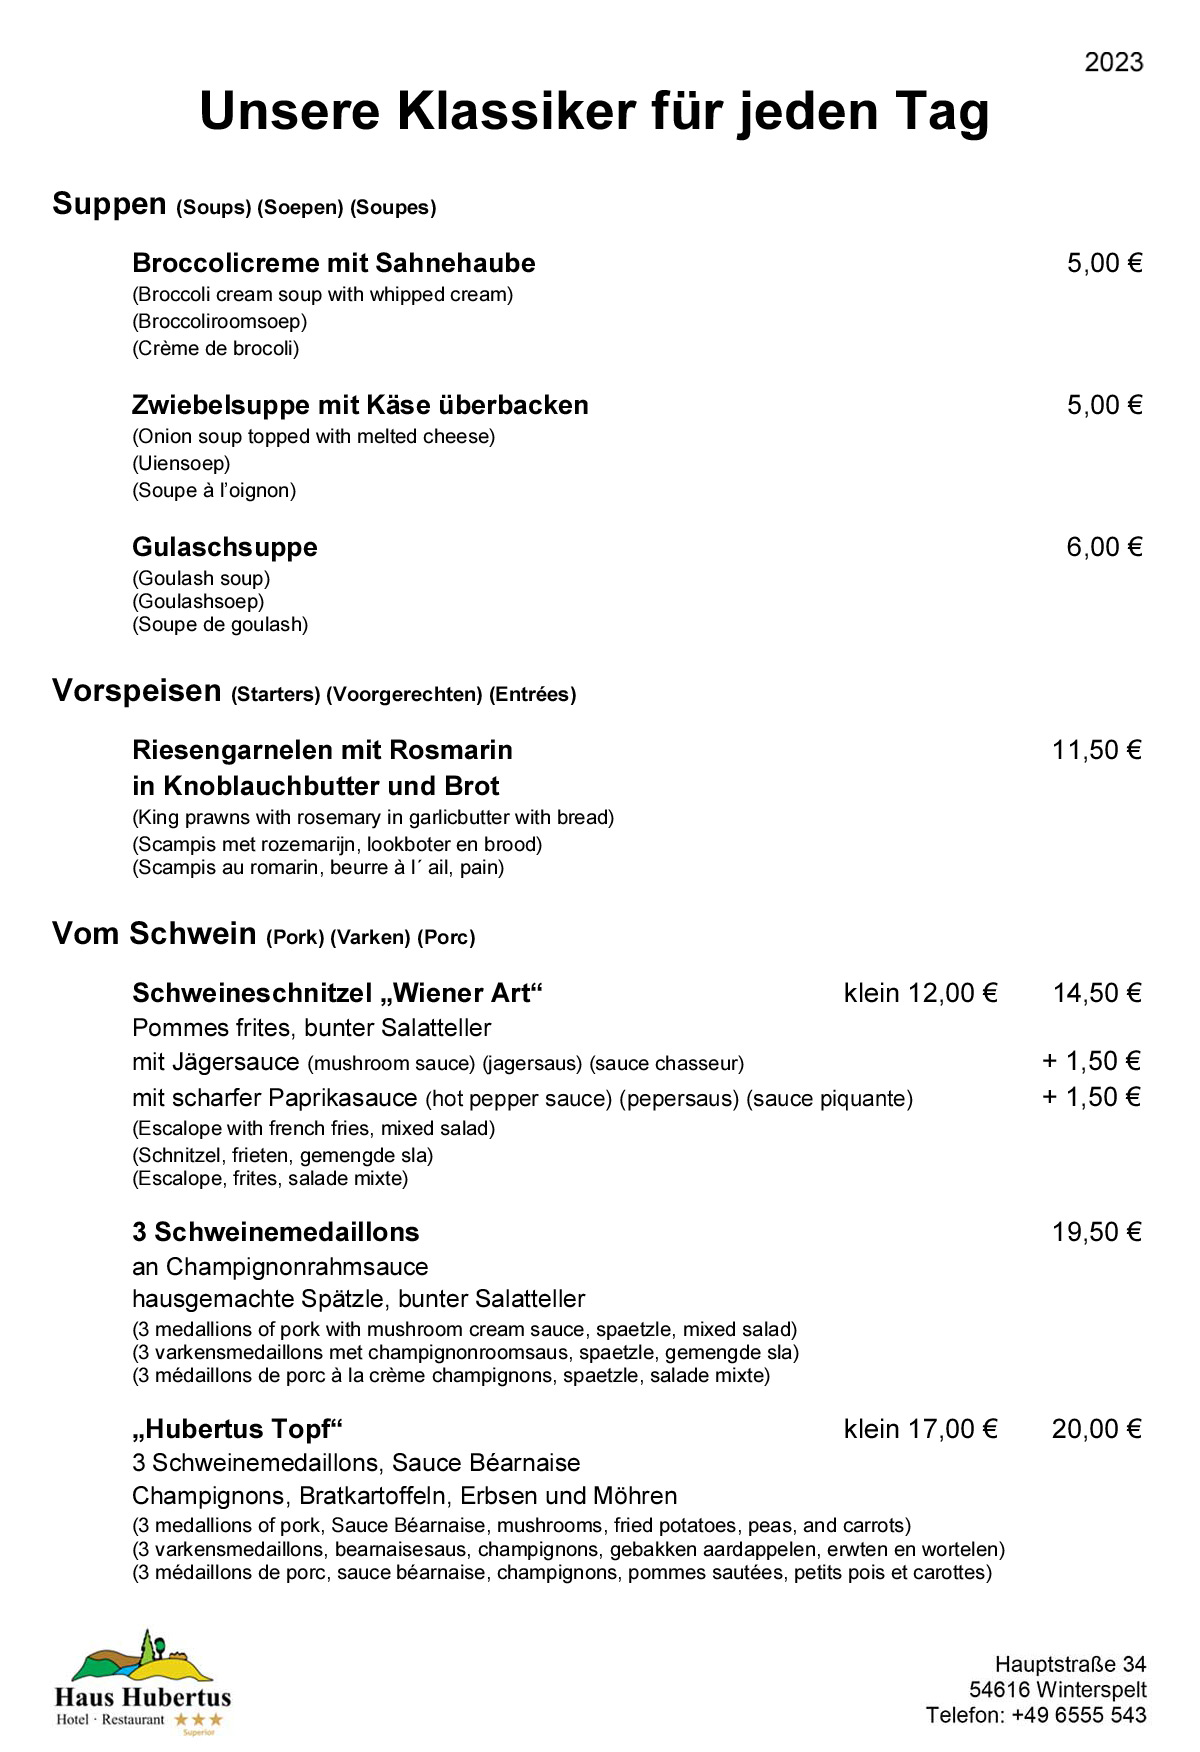 Hotel - Restaurant Haus Hubertus - Speisekarte 02/2023 - Die Klassiker - Seite 1